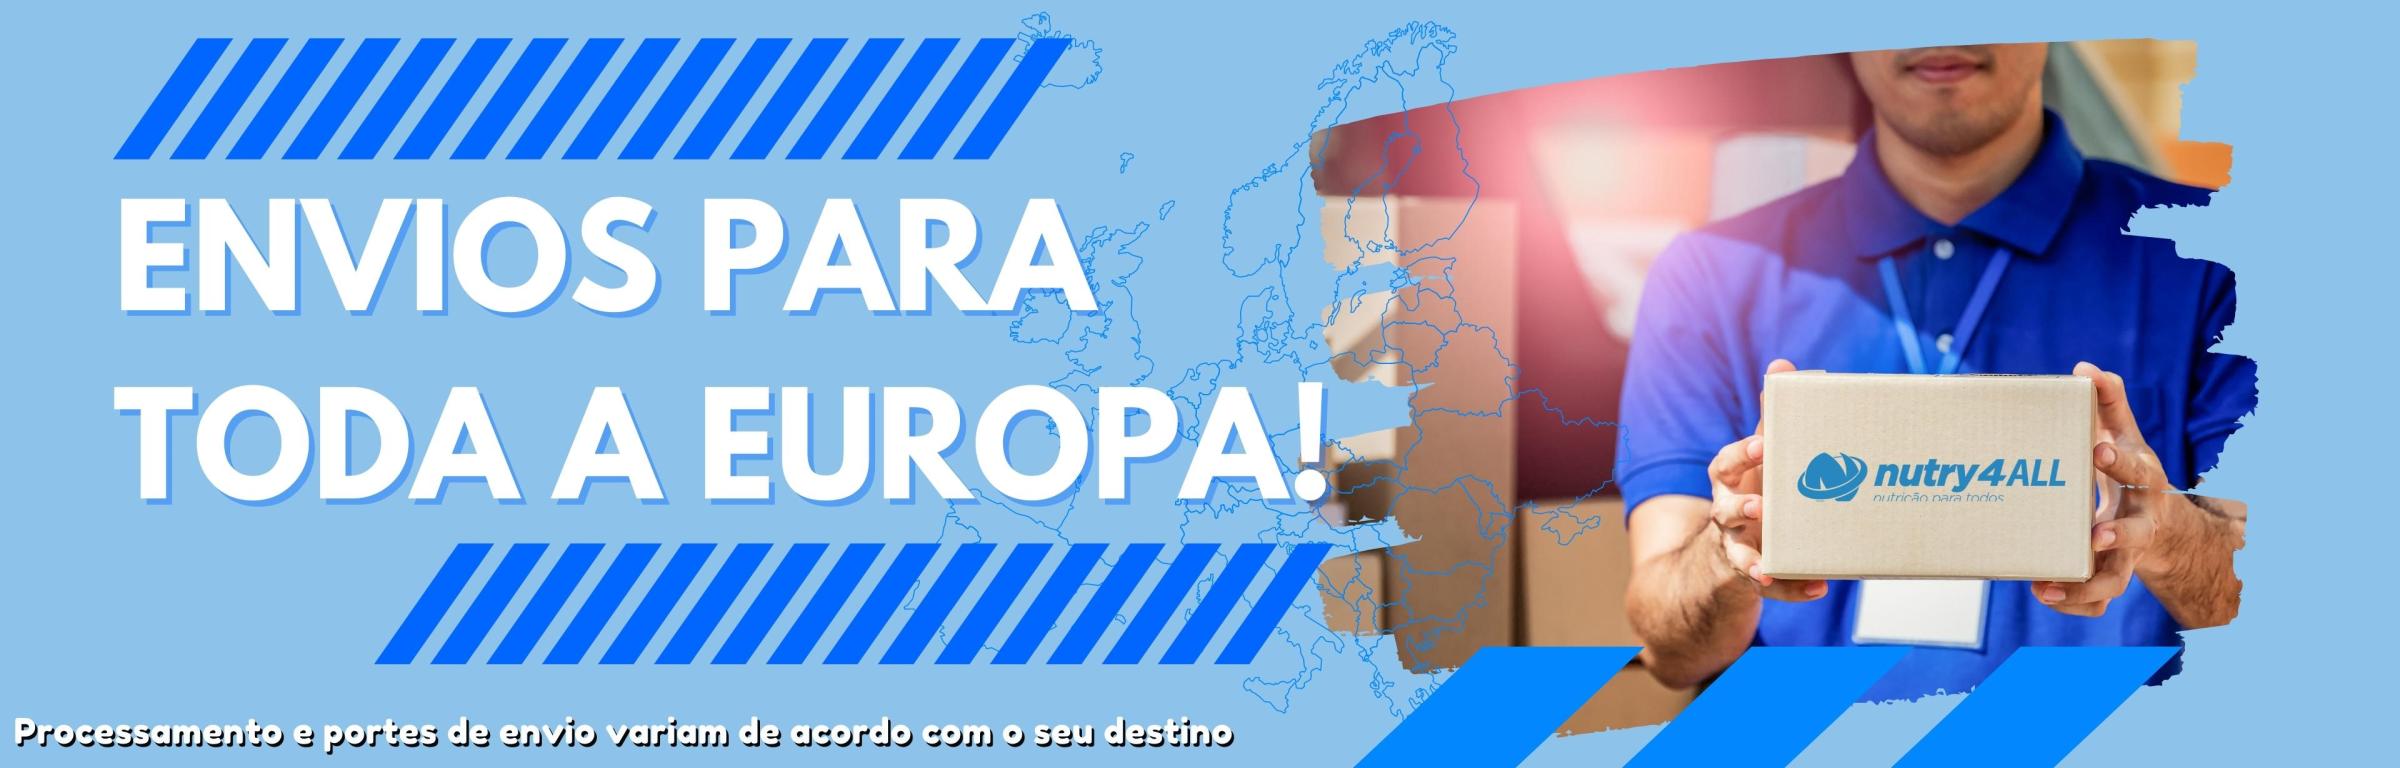 Nutry4All com envios para toda a Europa! - Nutry4All com envios para toda a Europa!